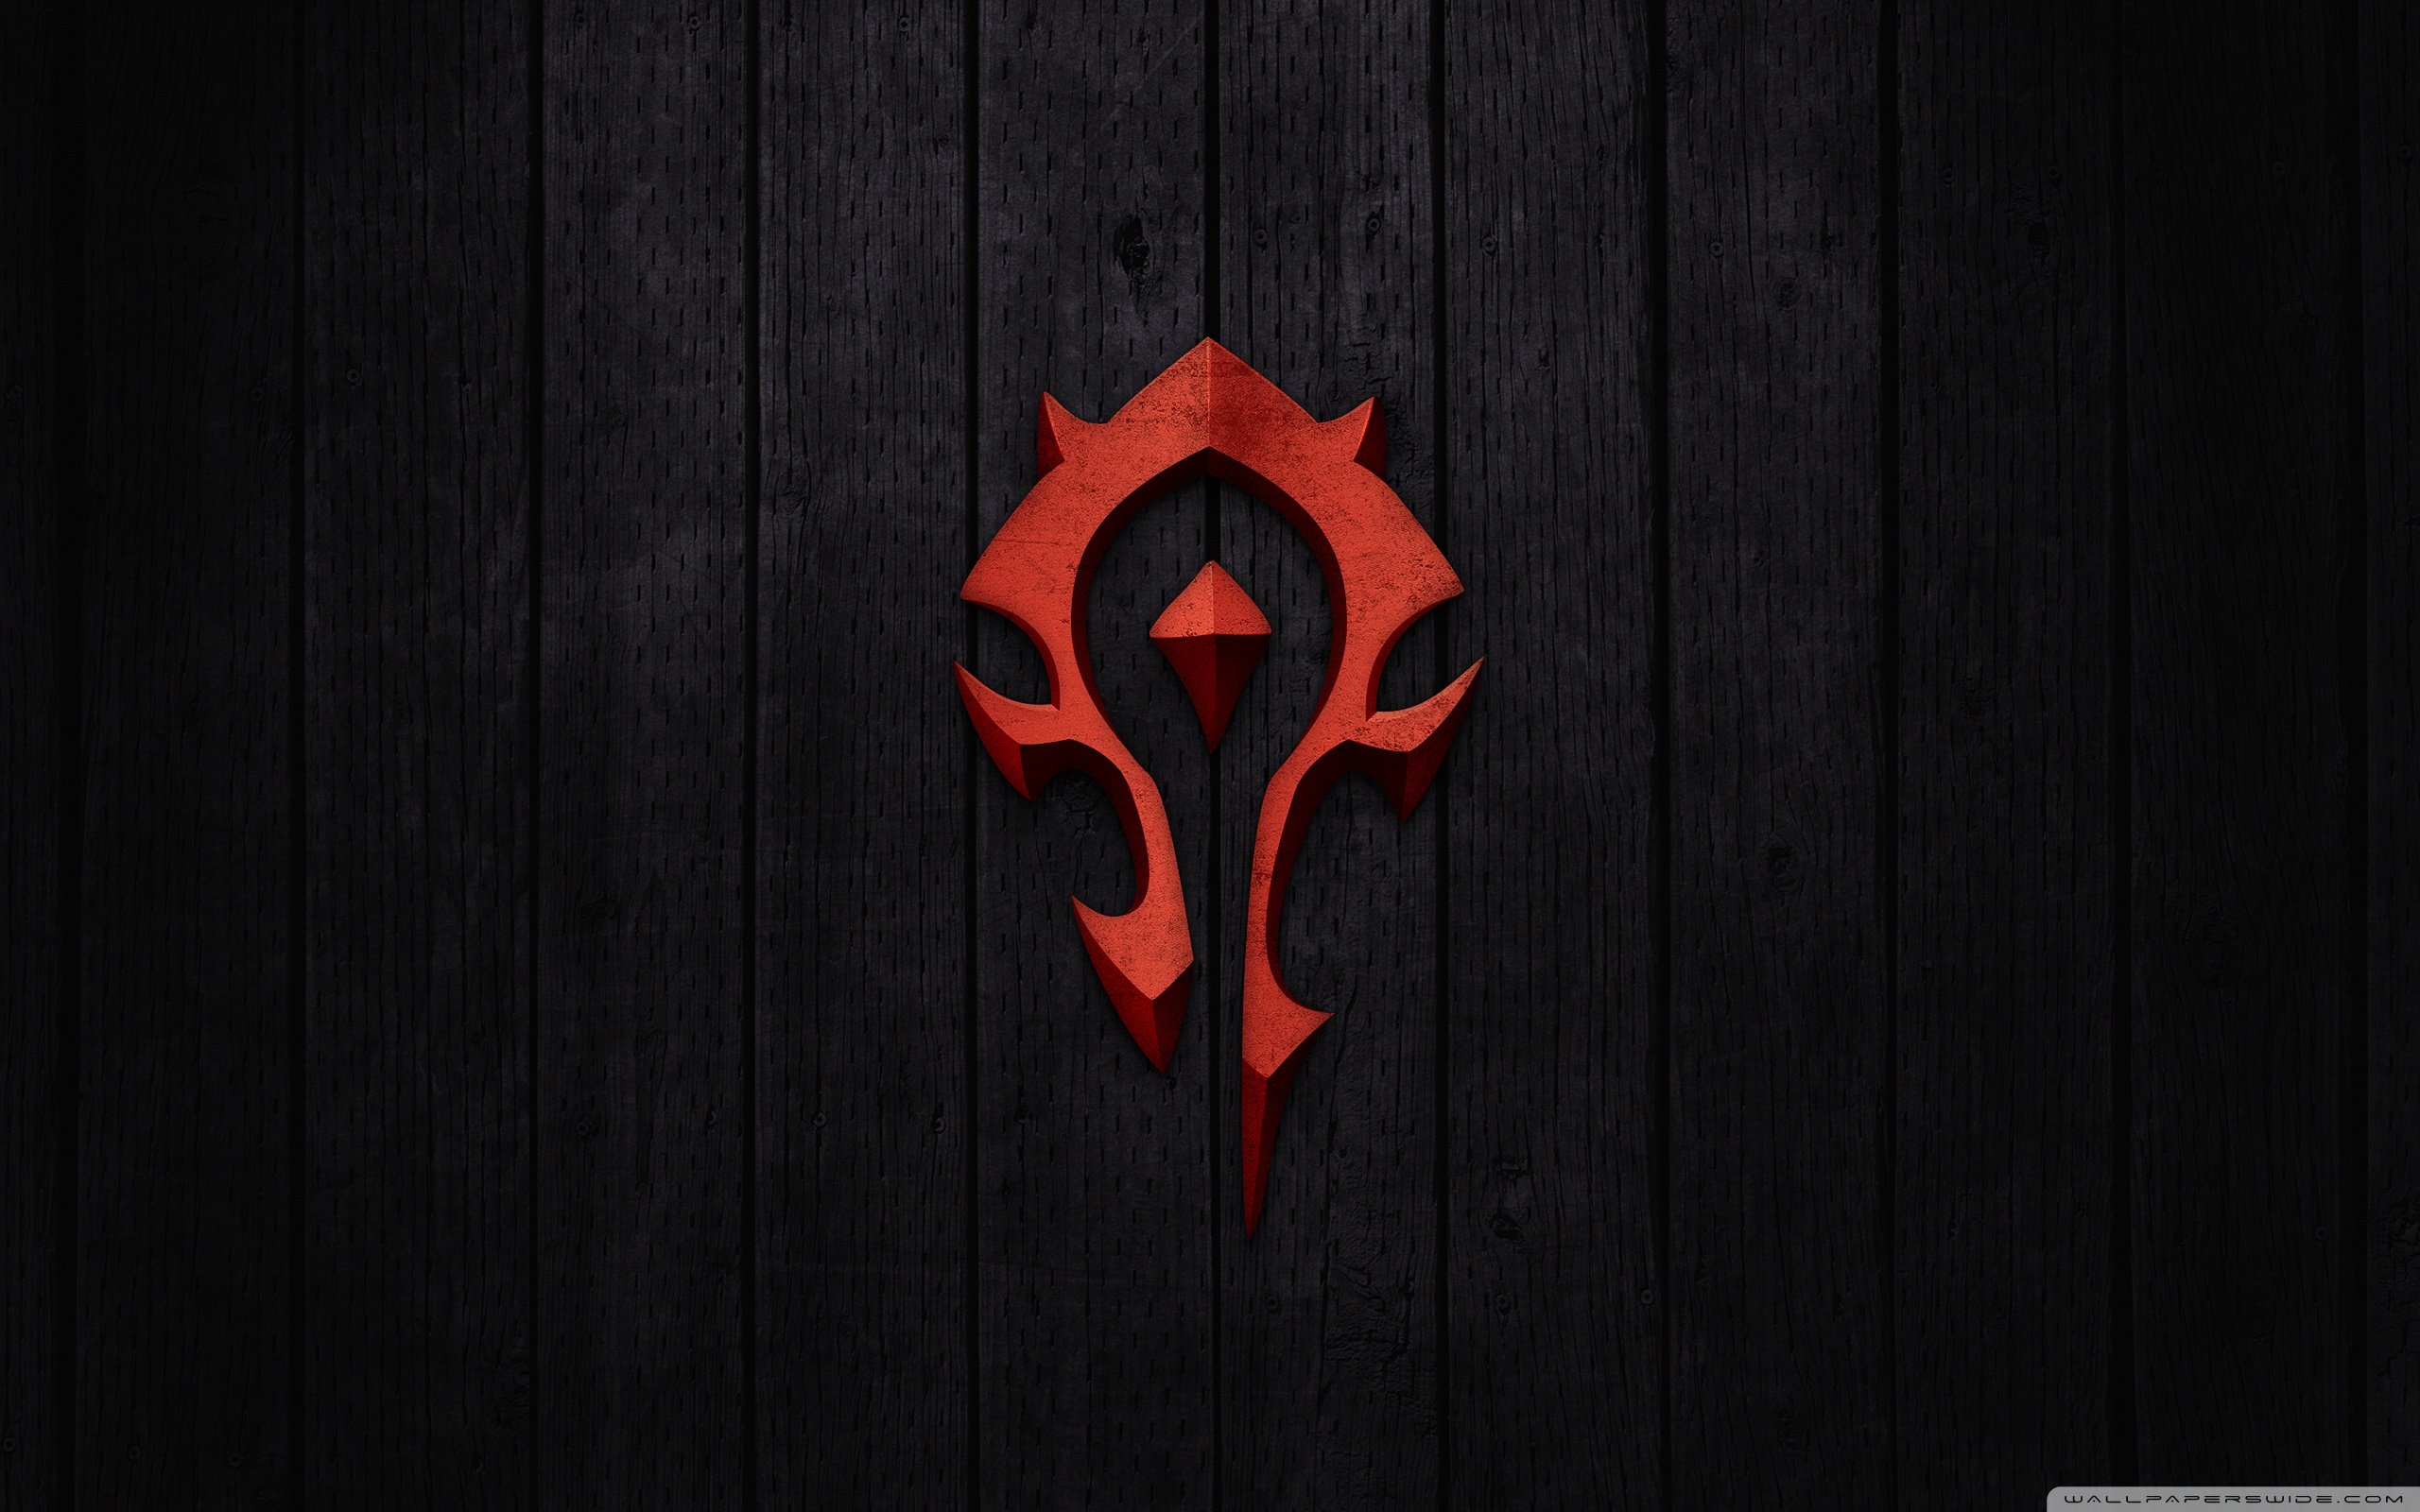 World of Warcraft Horde Sign Wallpaper